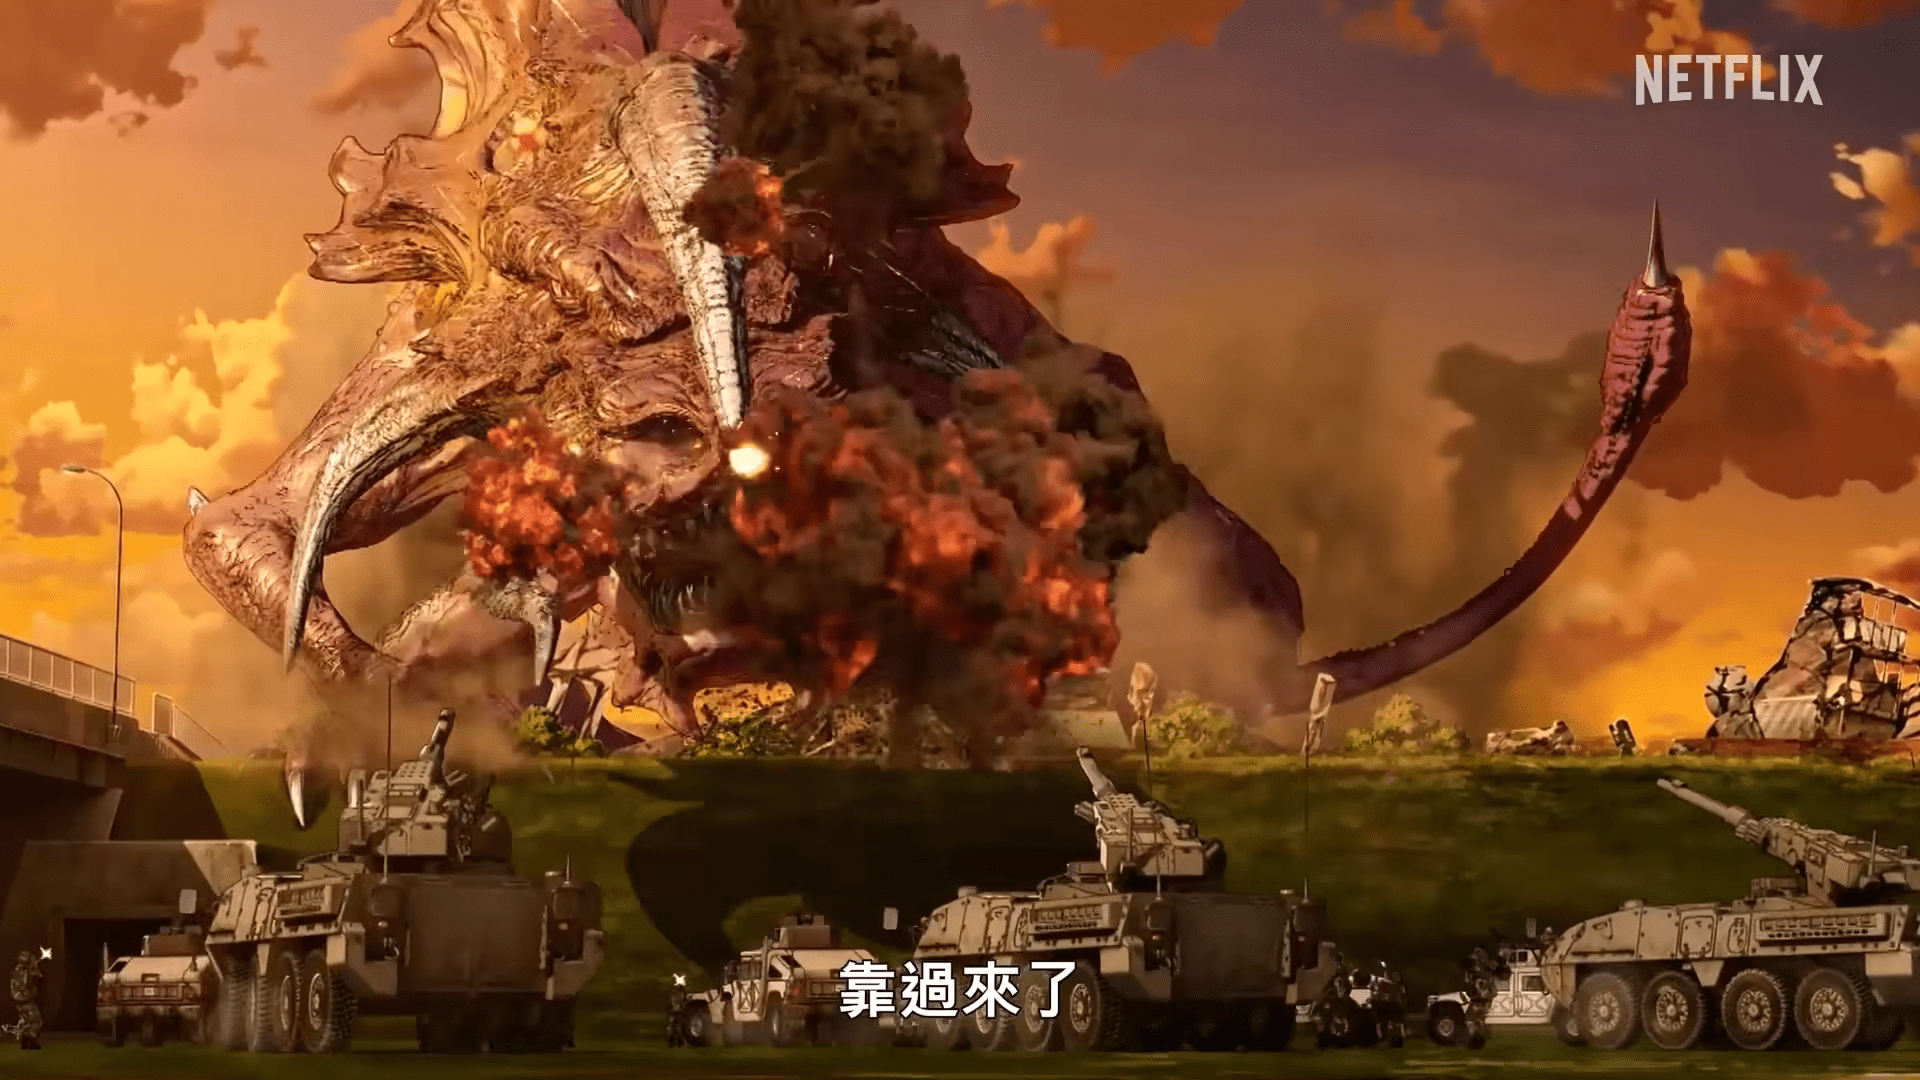 网飞动画《大怪兽卡美拉 重生》正式预告公开-C3动漫网